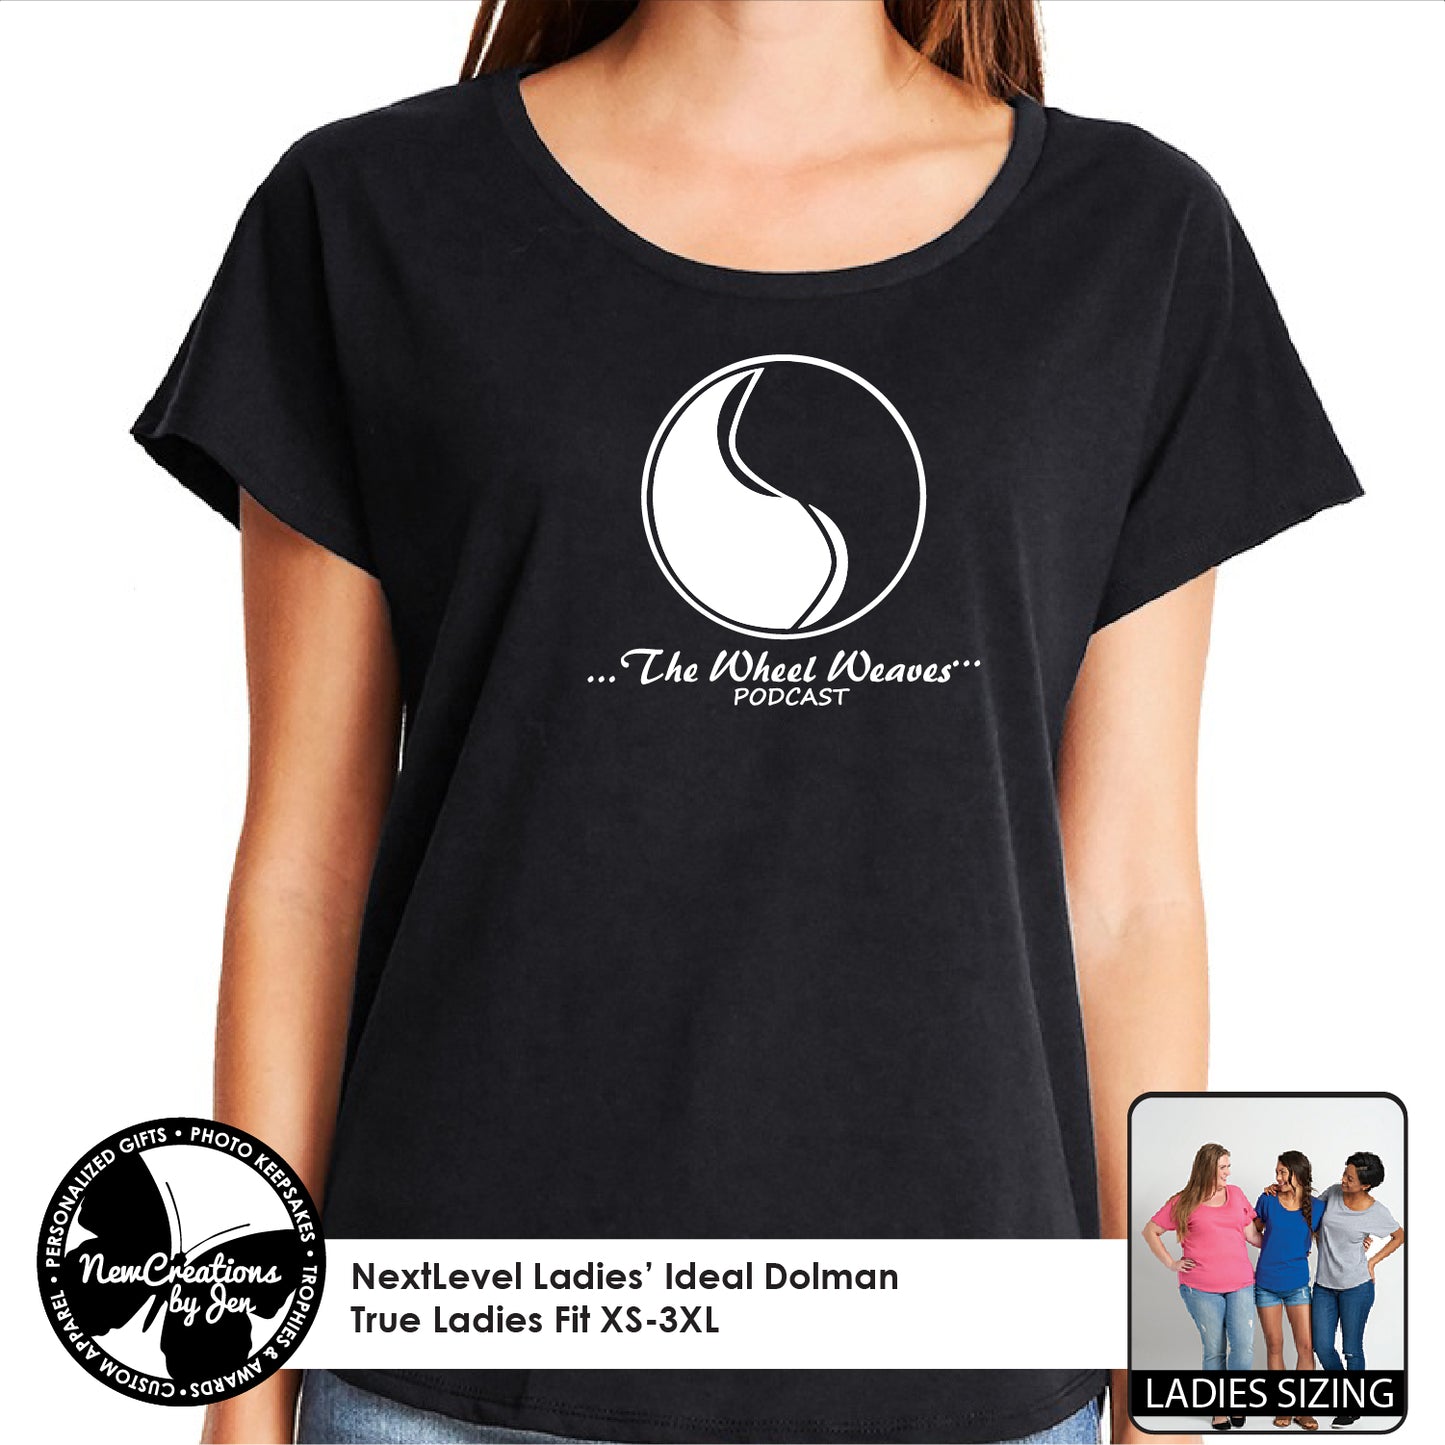 TWW - NextLevel Ladies' Dolman T-Shirt